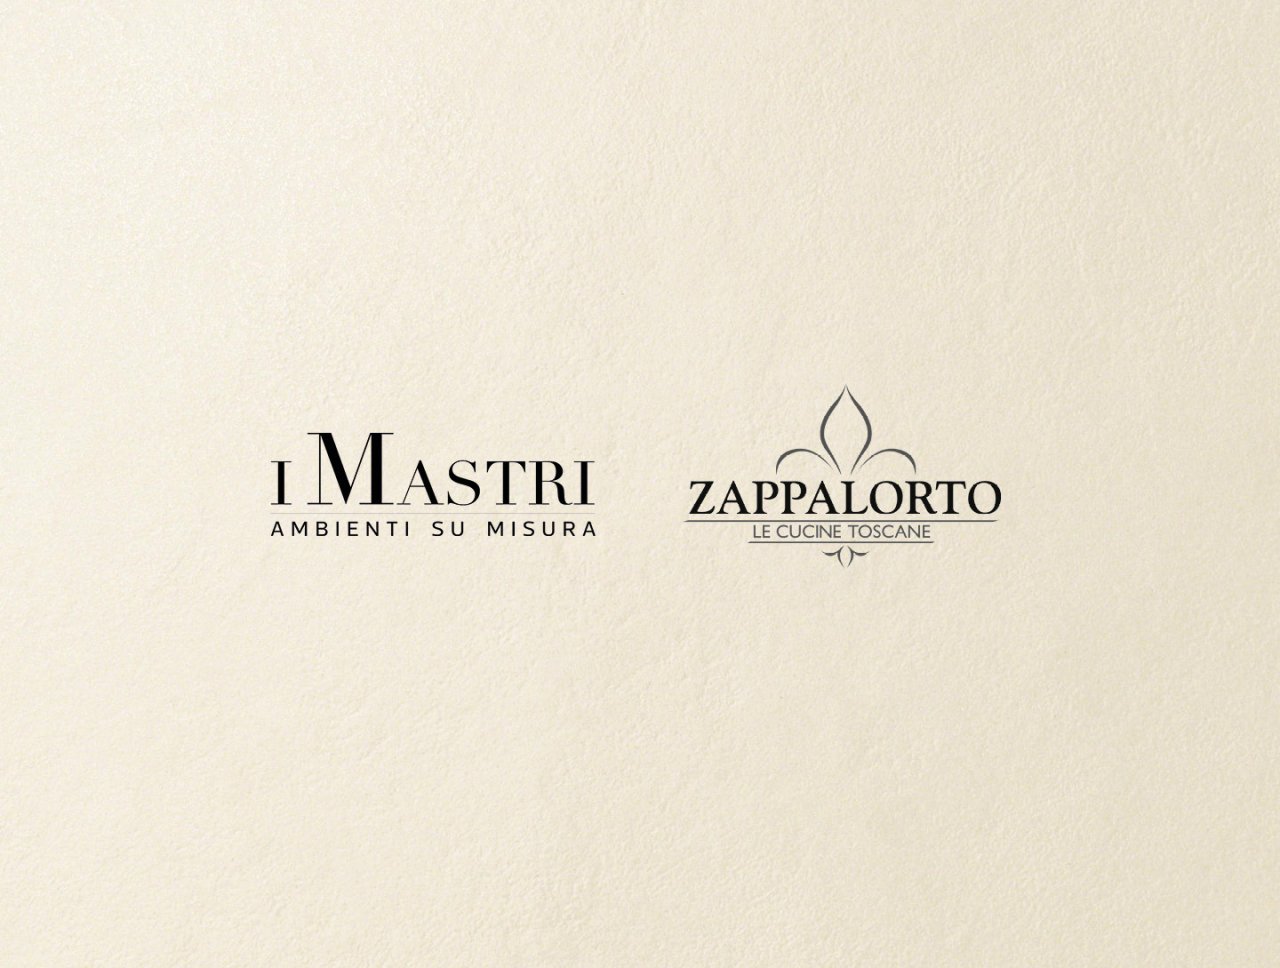 Zappalorto and I Mastri announce the corporate merger.